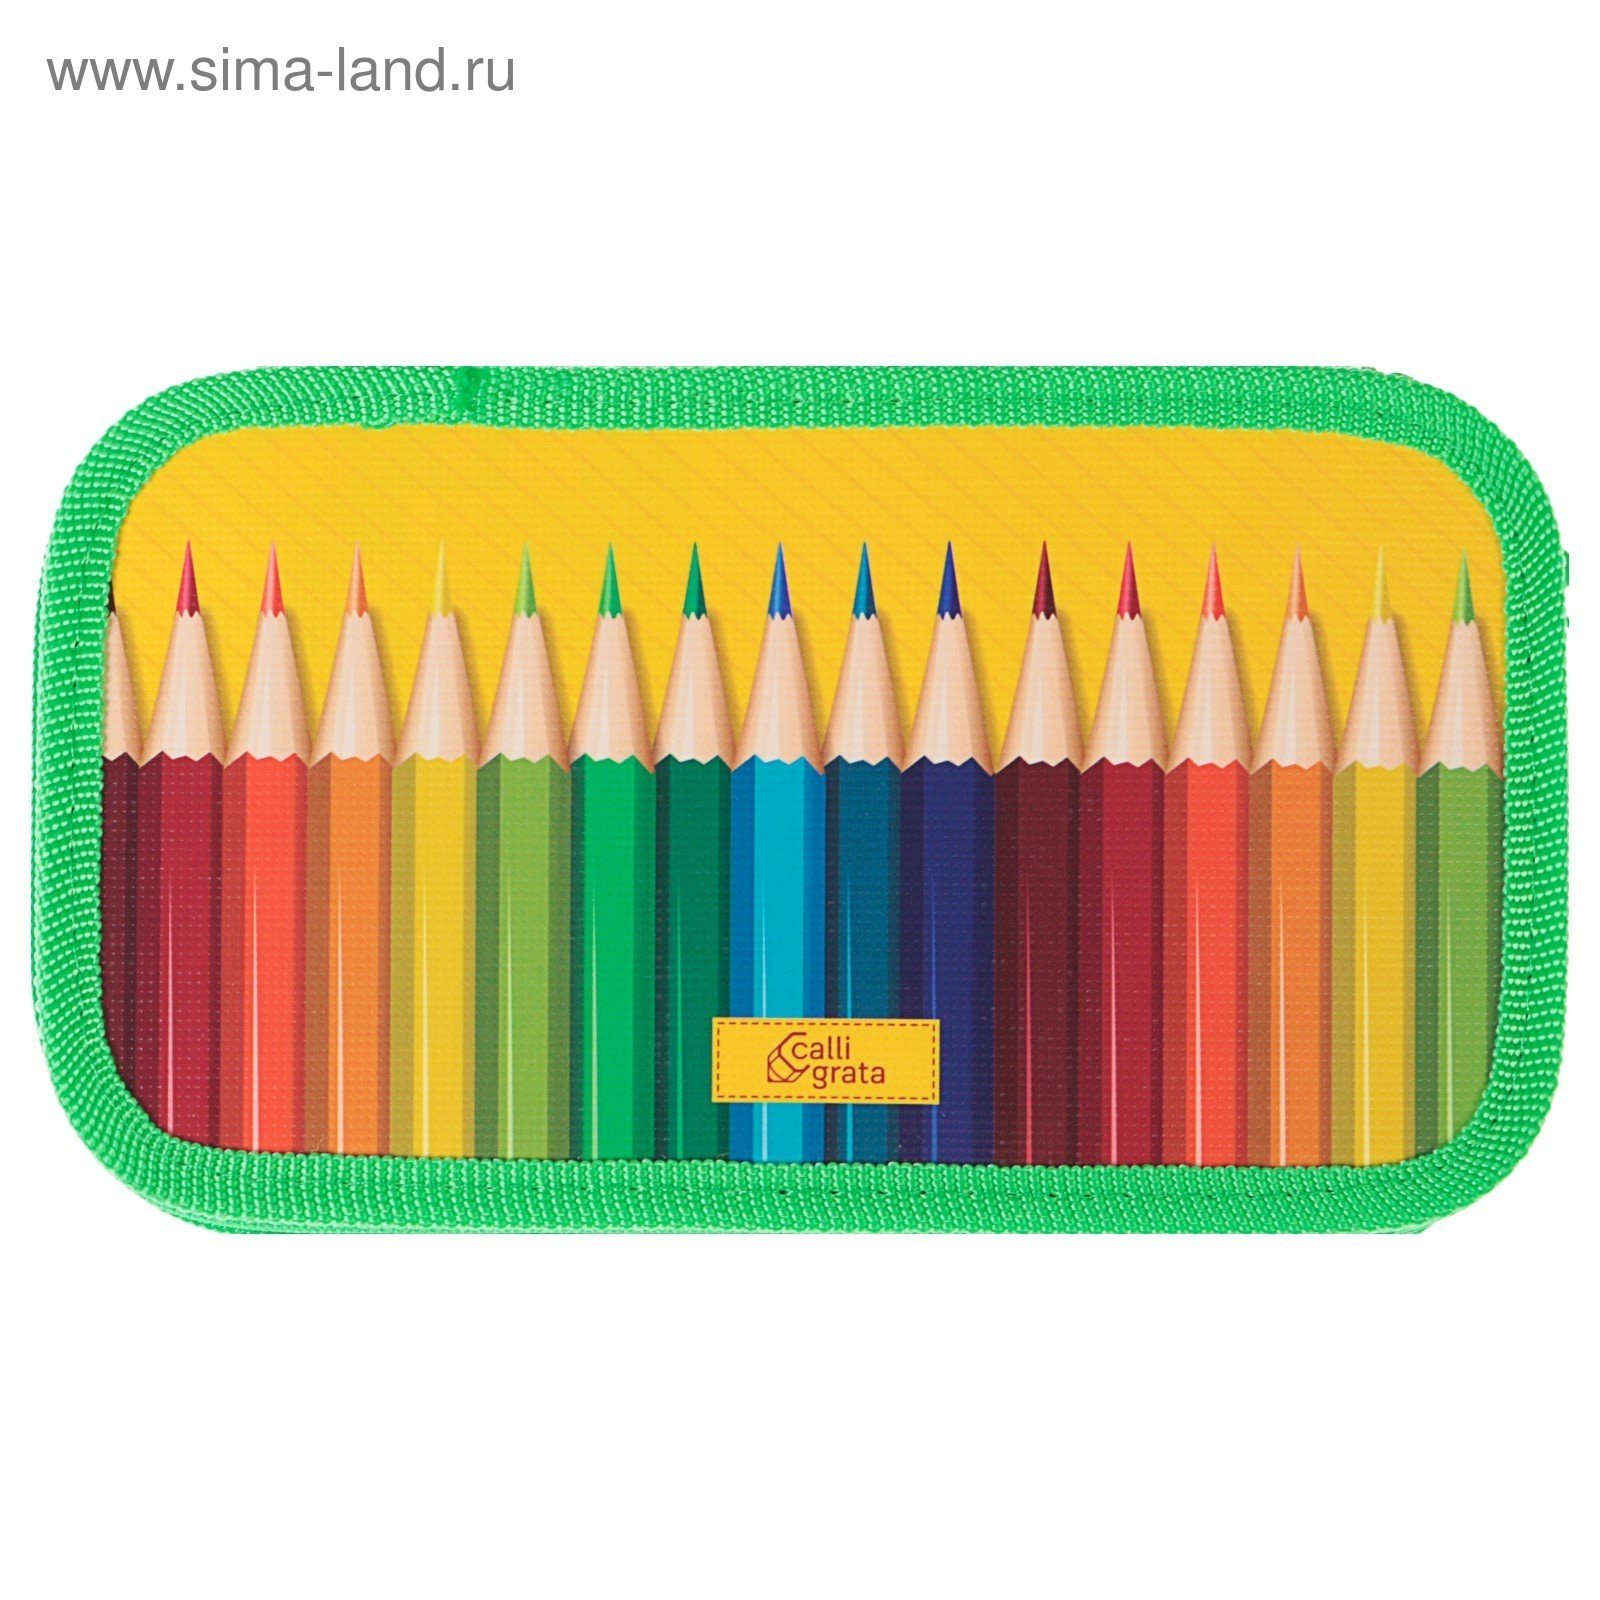 Цветные карандаши в пенале. Пенал для карандашей. Пенал для карандашей для детей. Пенал для цветных карандашей. Открытый пенал с карандашами.